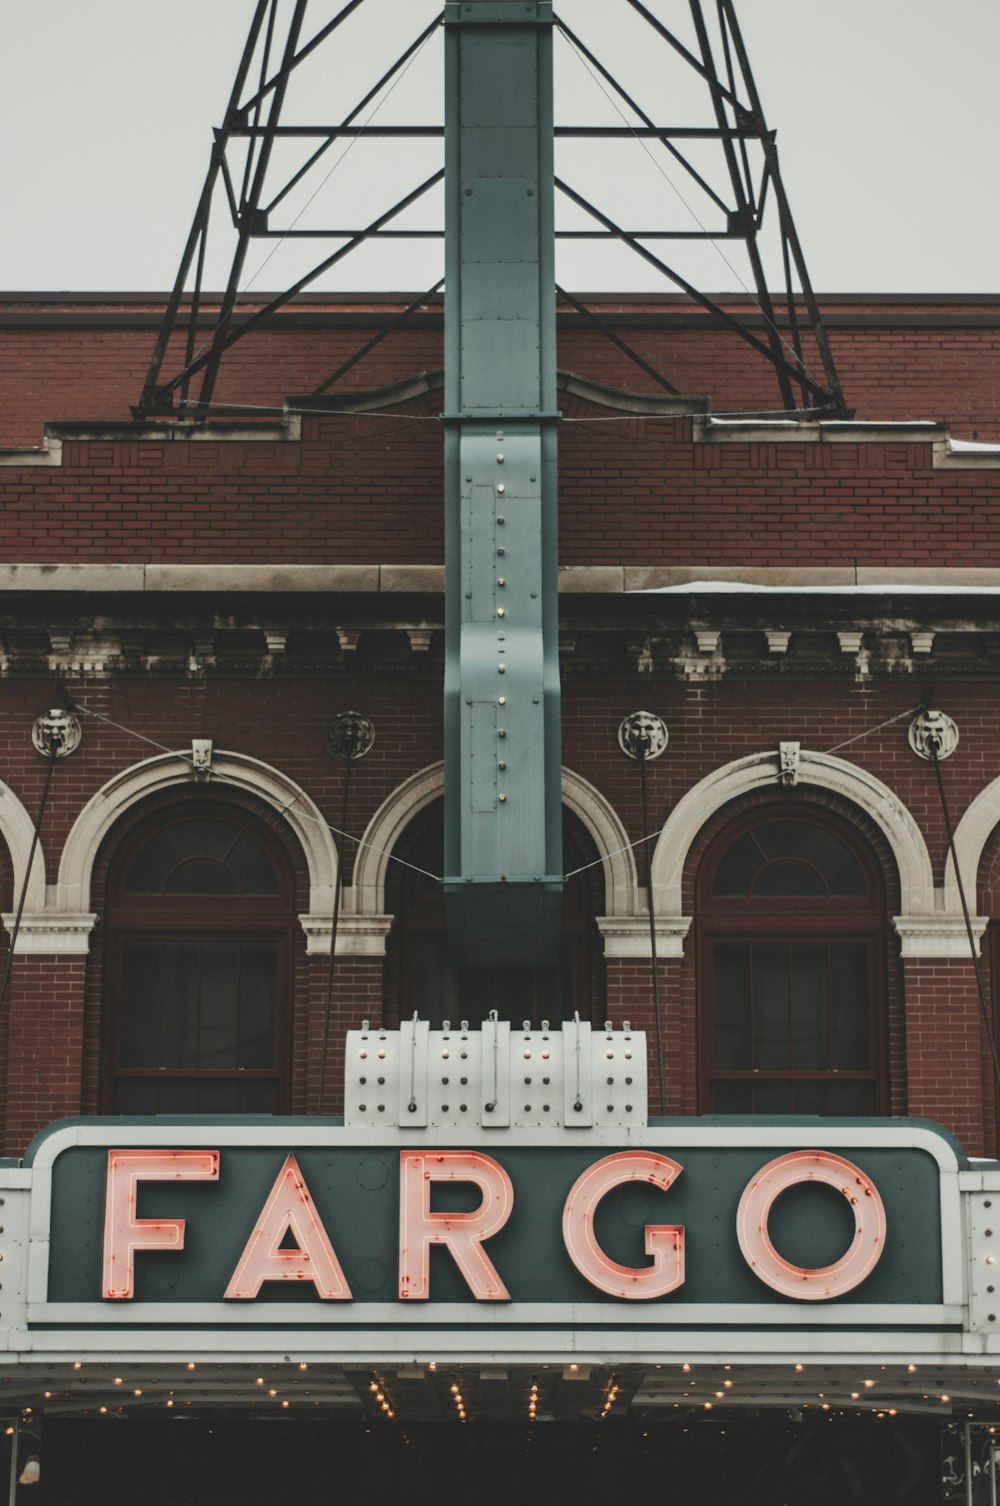 Is Fargo On Hulu?